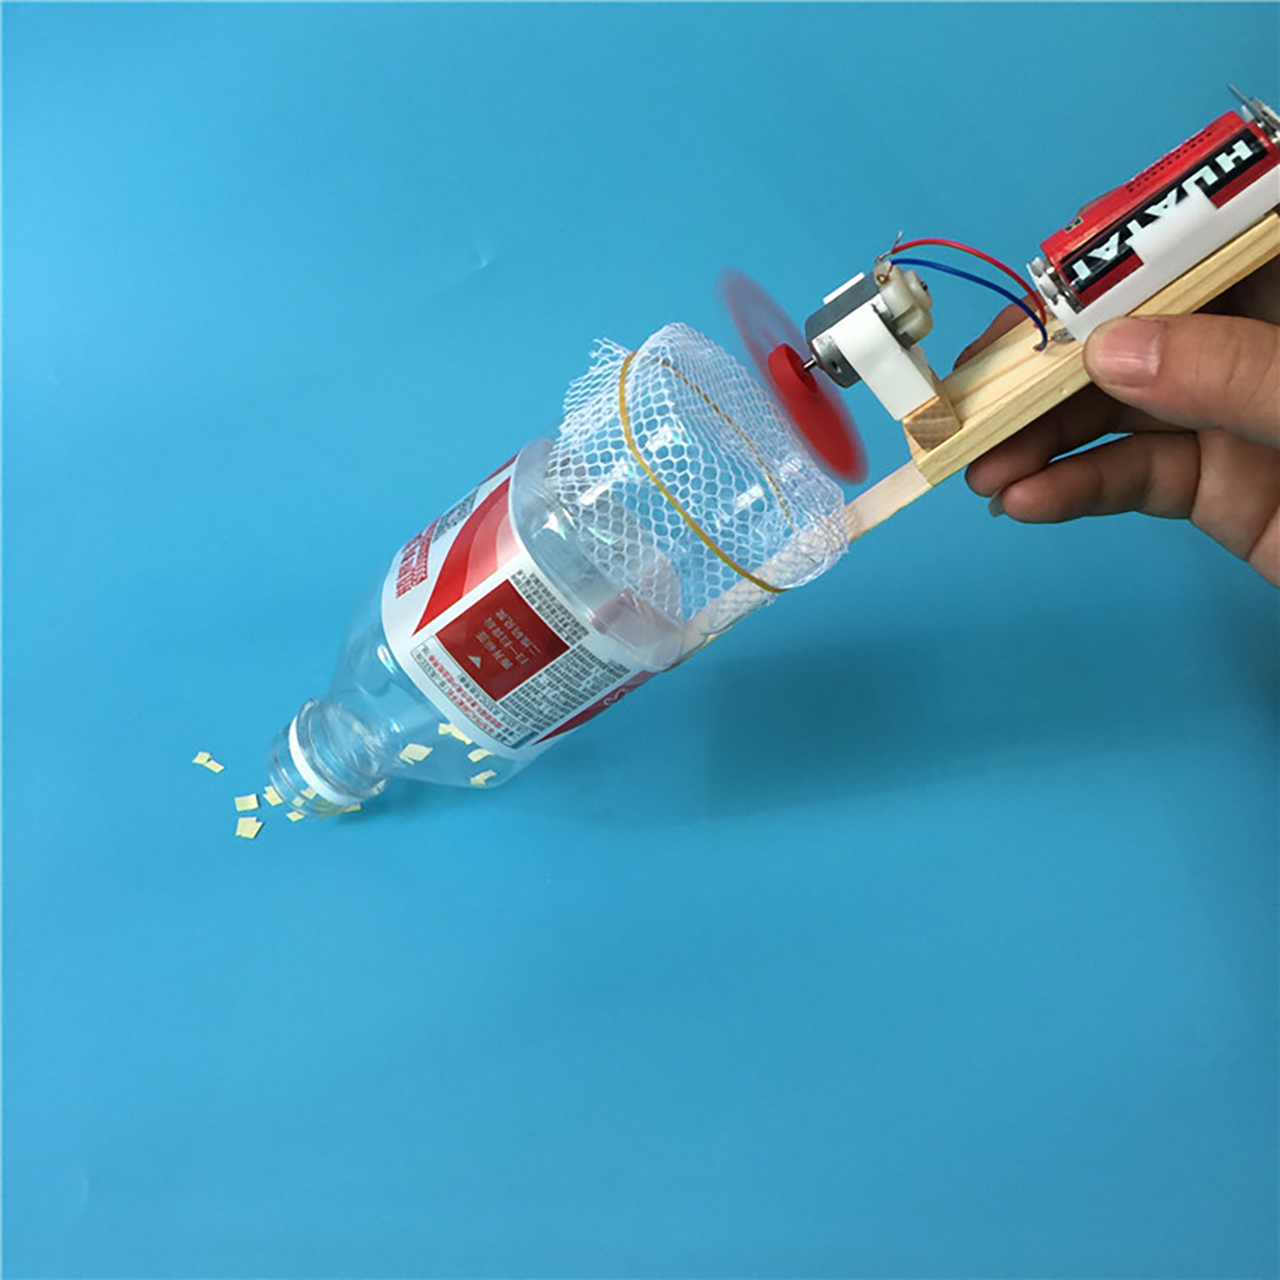 Đồ chơi trẻ em S17 thông minh sáng tạo STEM (STEAM) mô hình lắp ghép máy hút bụi tự chế bằng ống nhựa